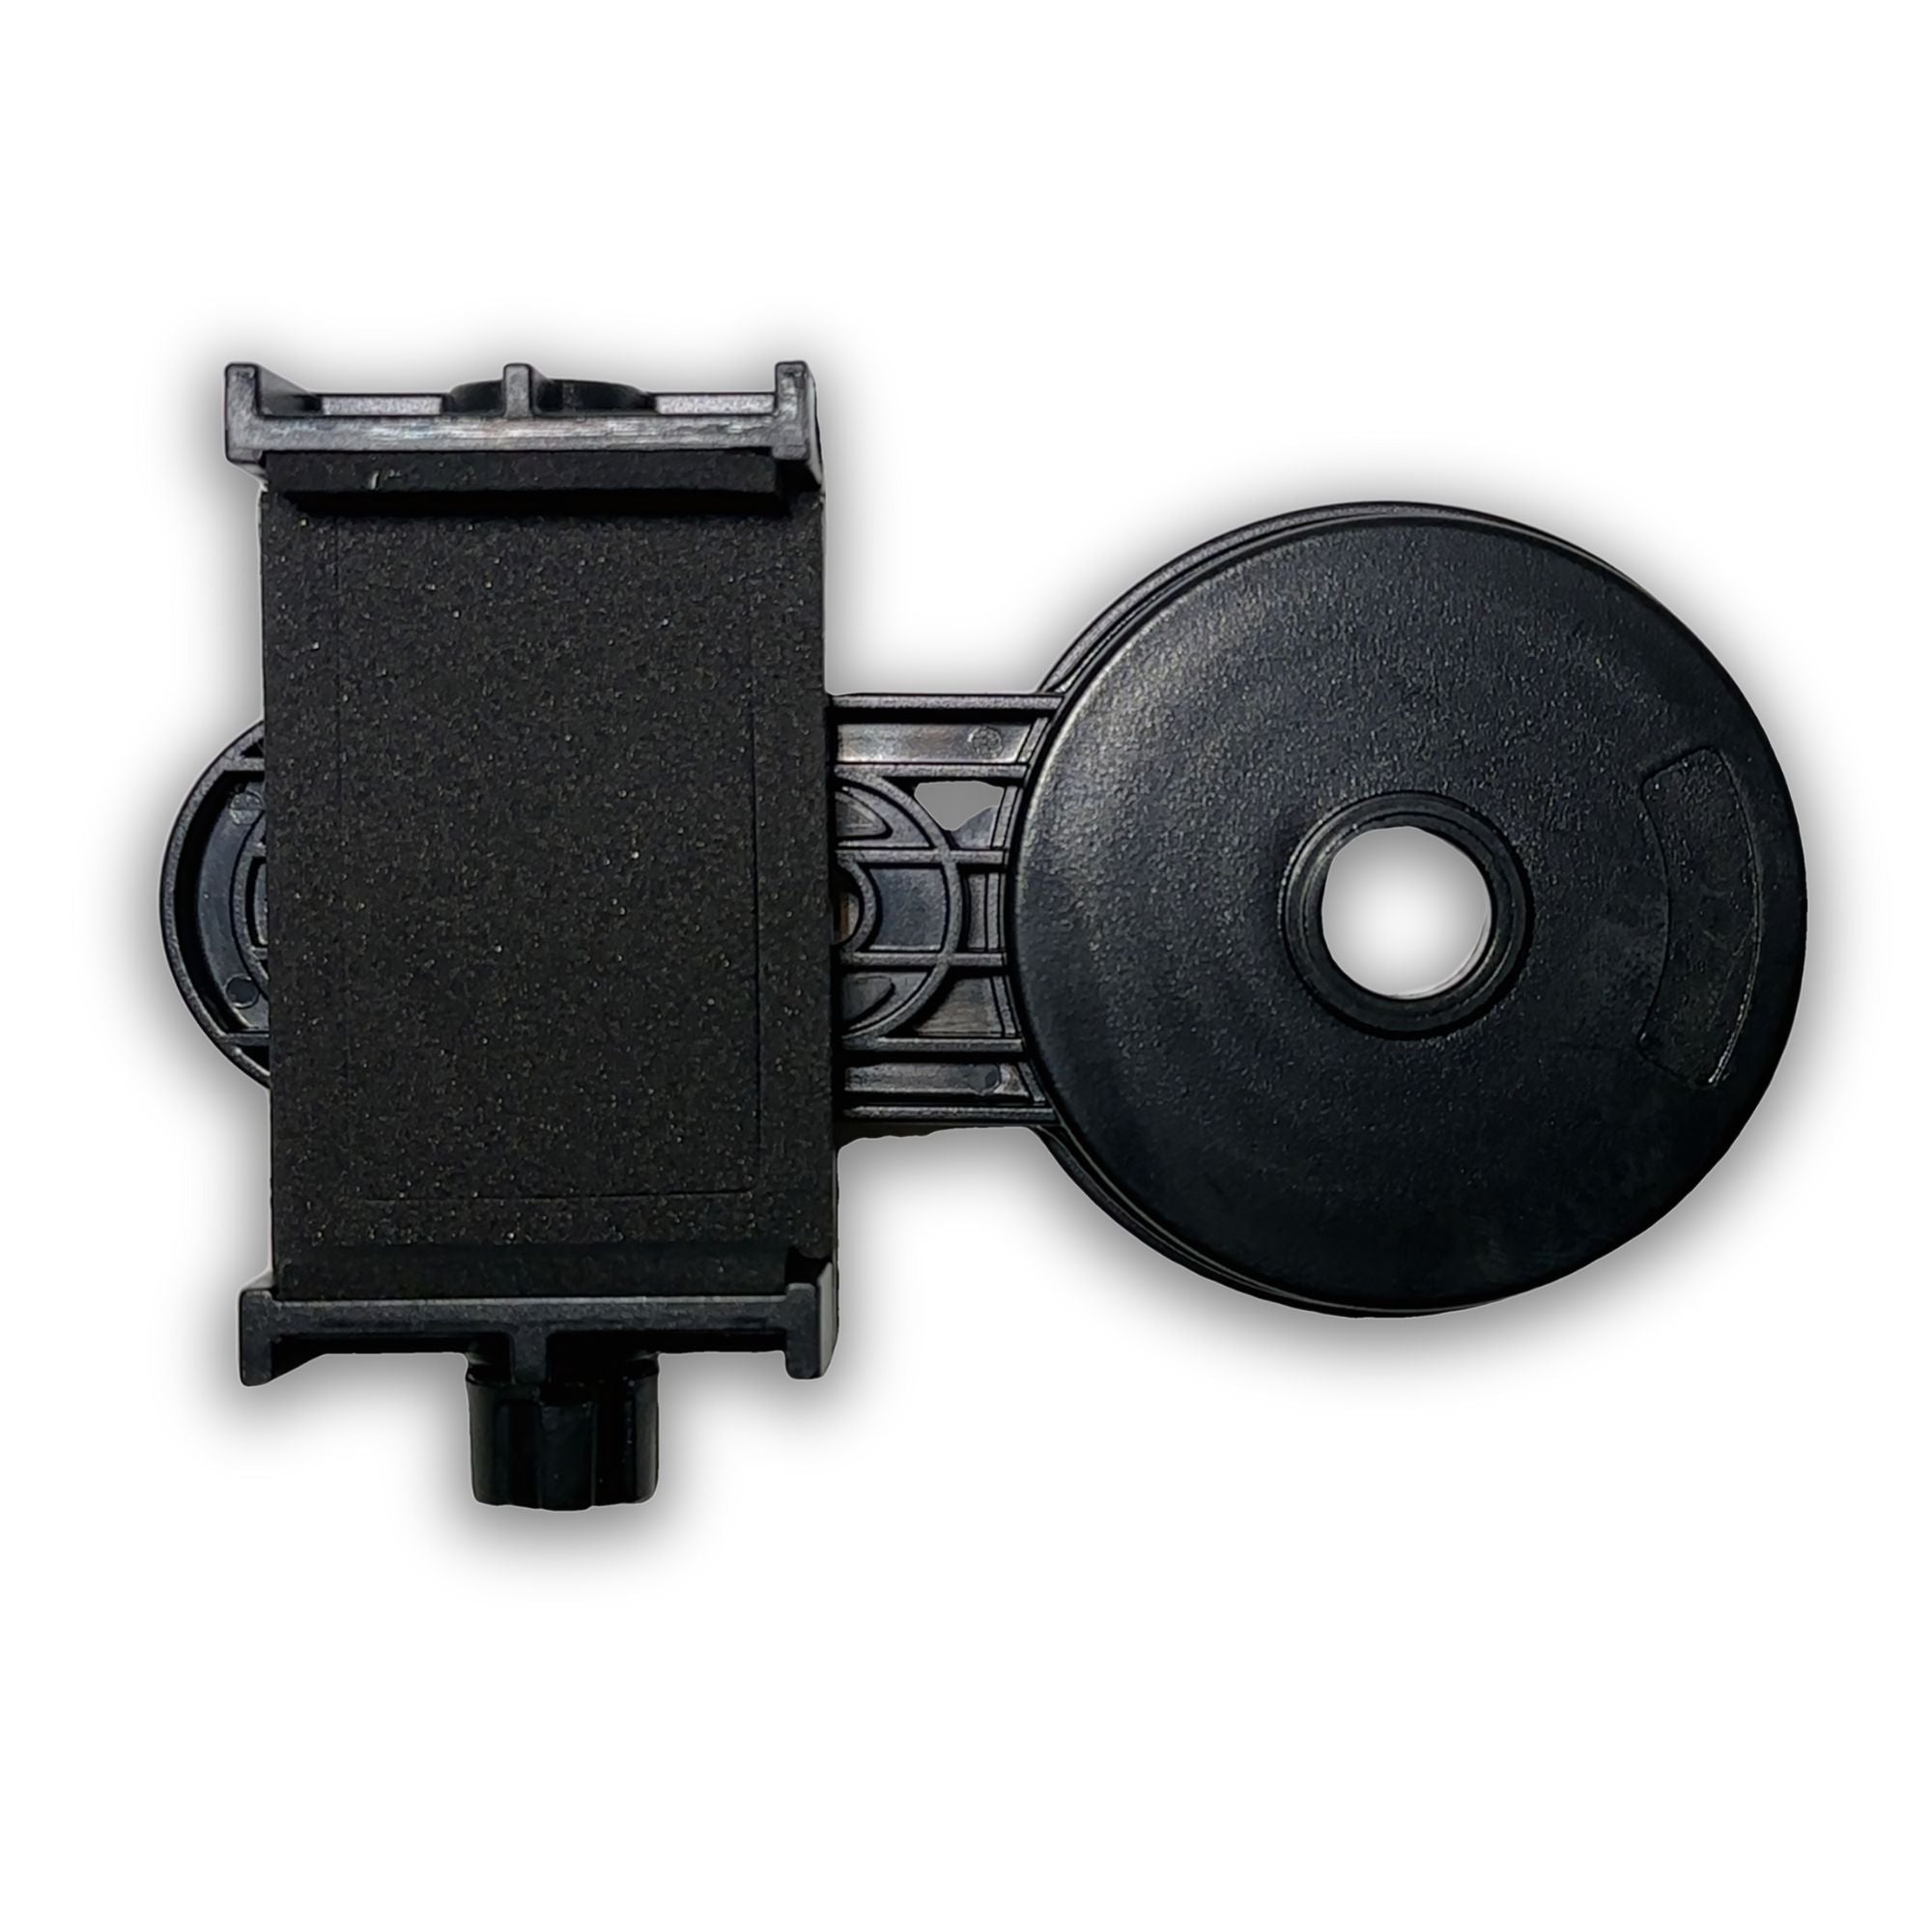 En enkel telefonhållare för ett mikroskop som låter dig fotografera ädelstenar